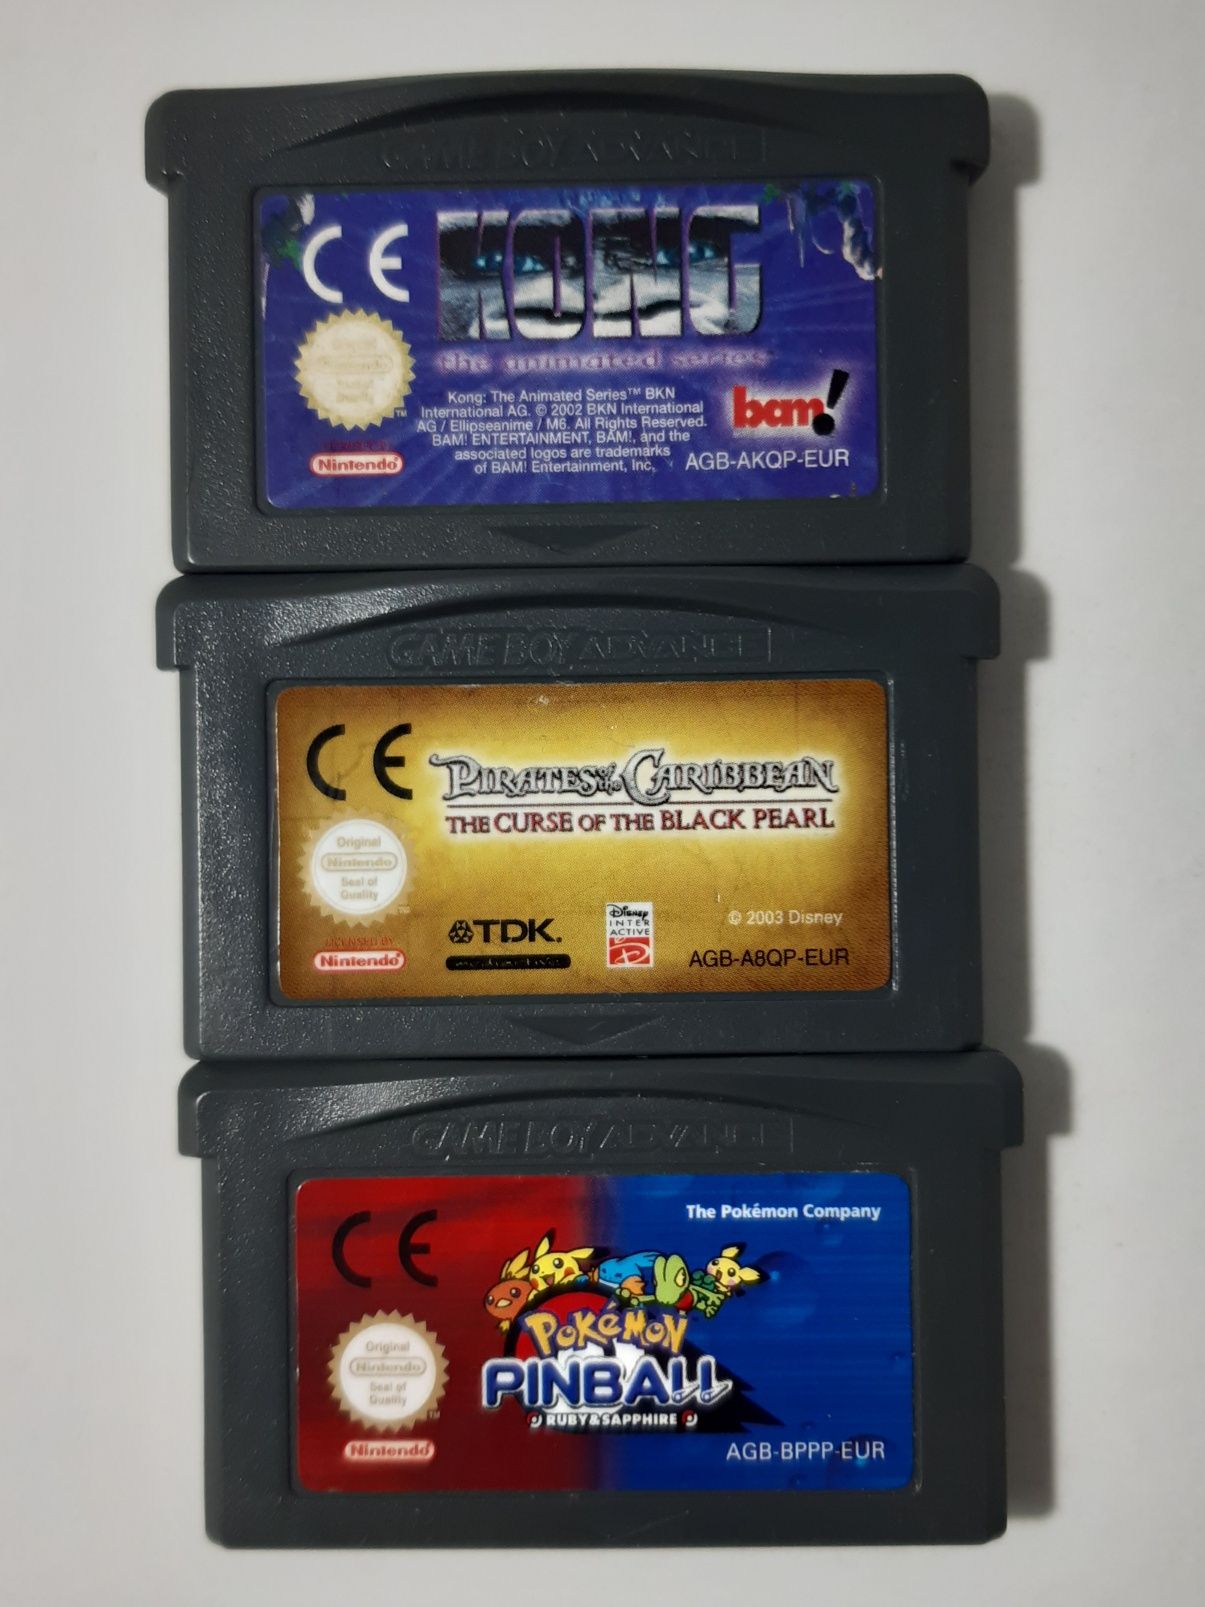 Jogos Game Boy Advance / GBA (Cartuchos Nintendo)